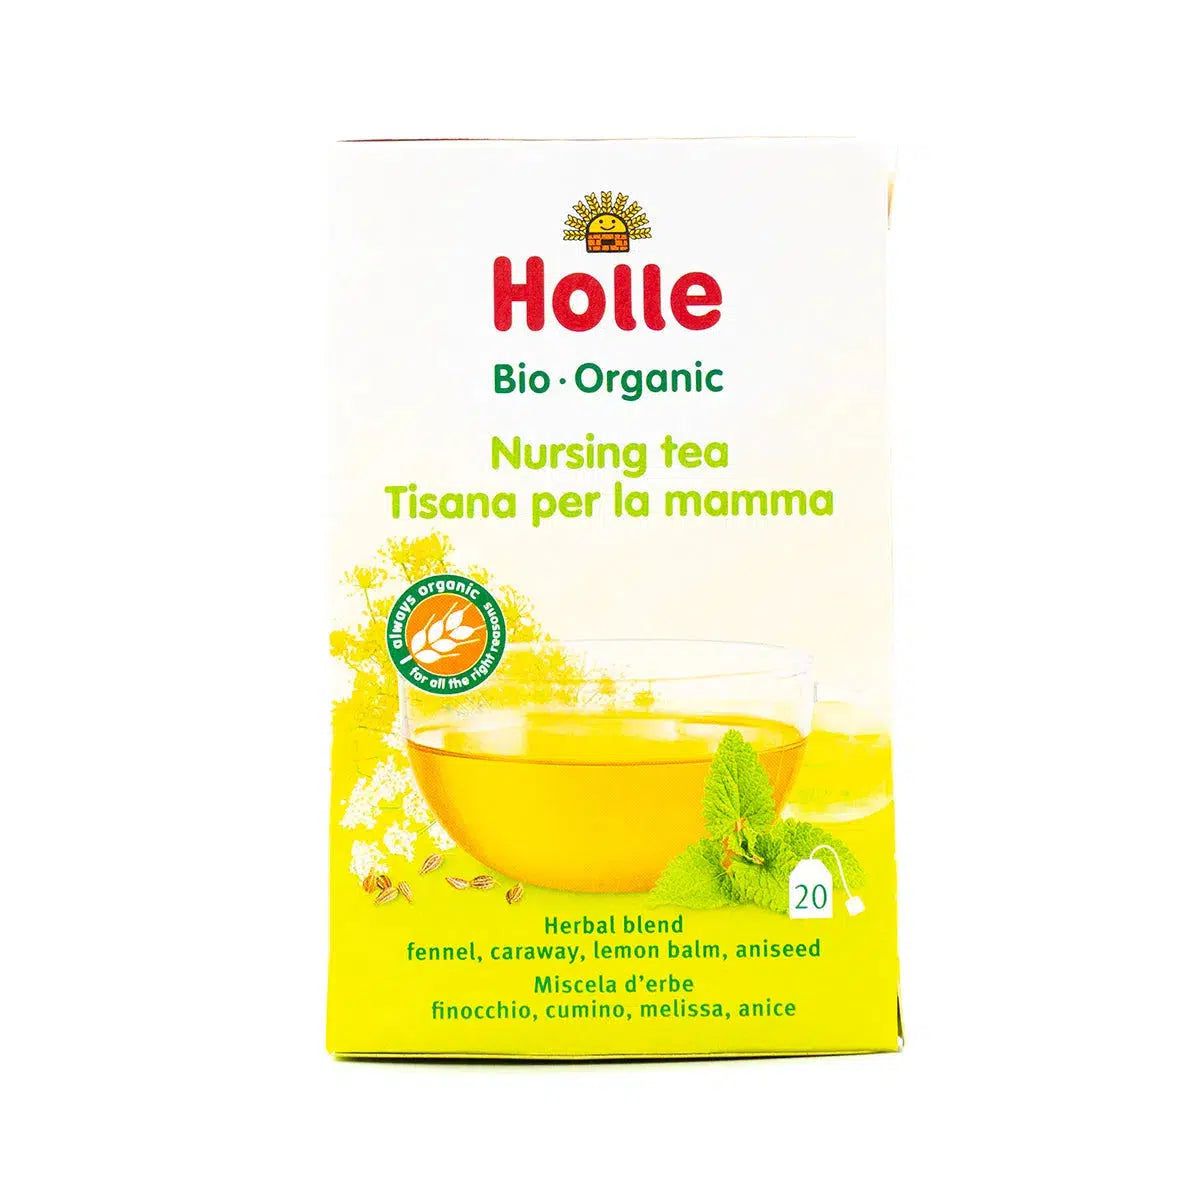 Holle Organic Nursing Tea (20 tea bags)